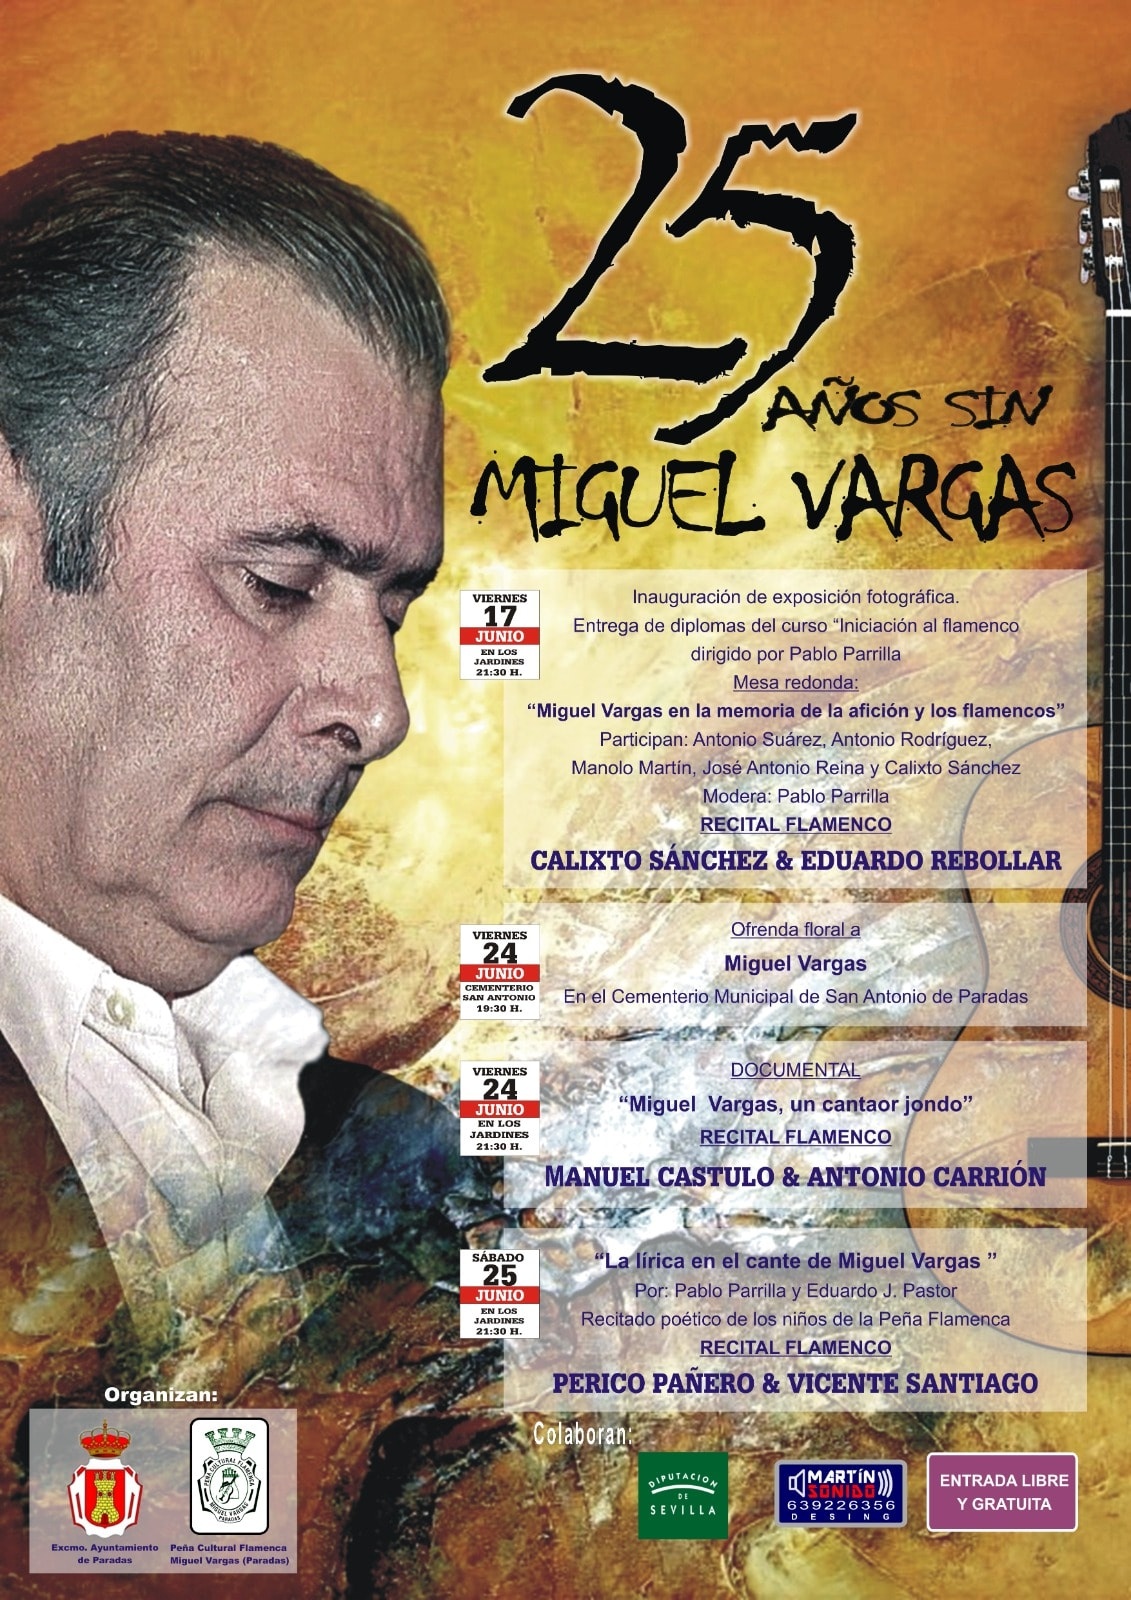 25 años sin Miguel Vargas